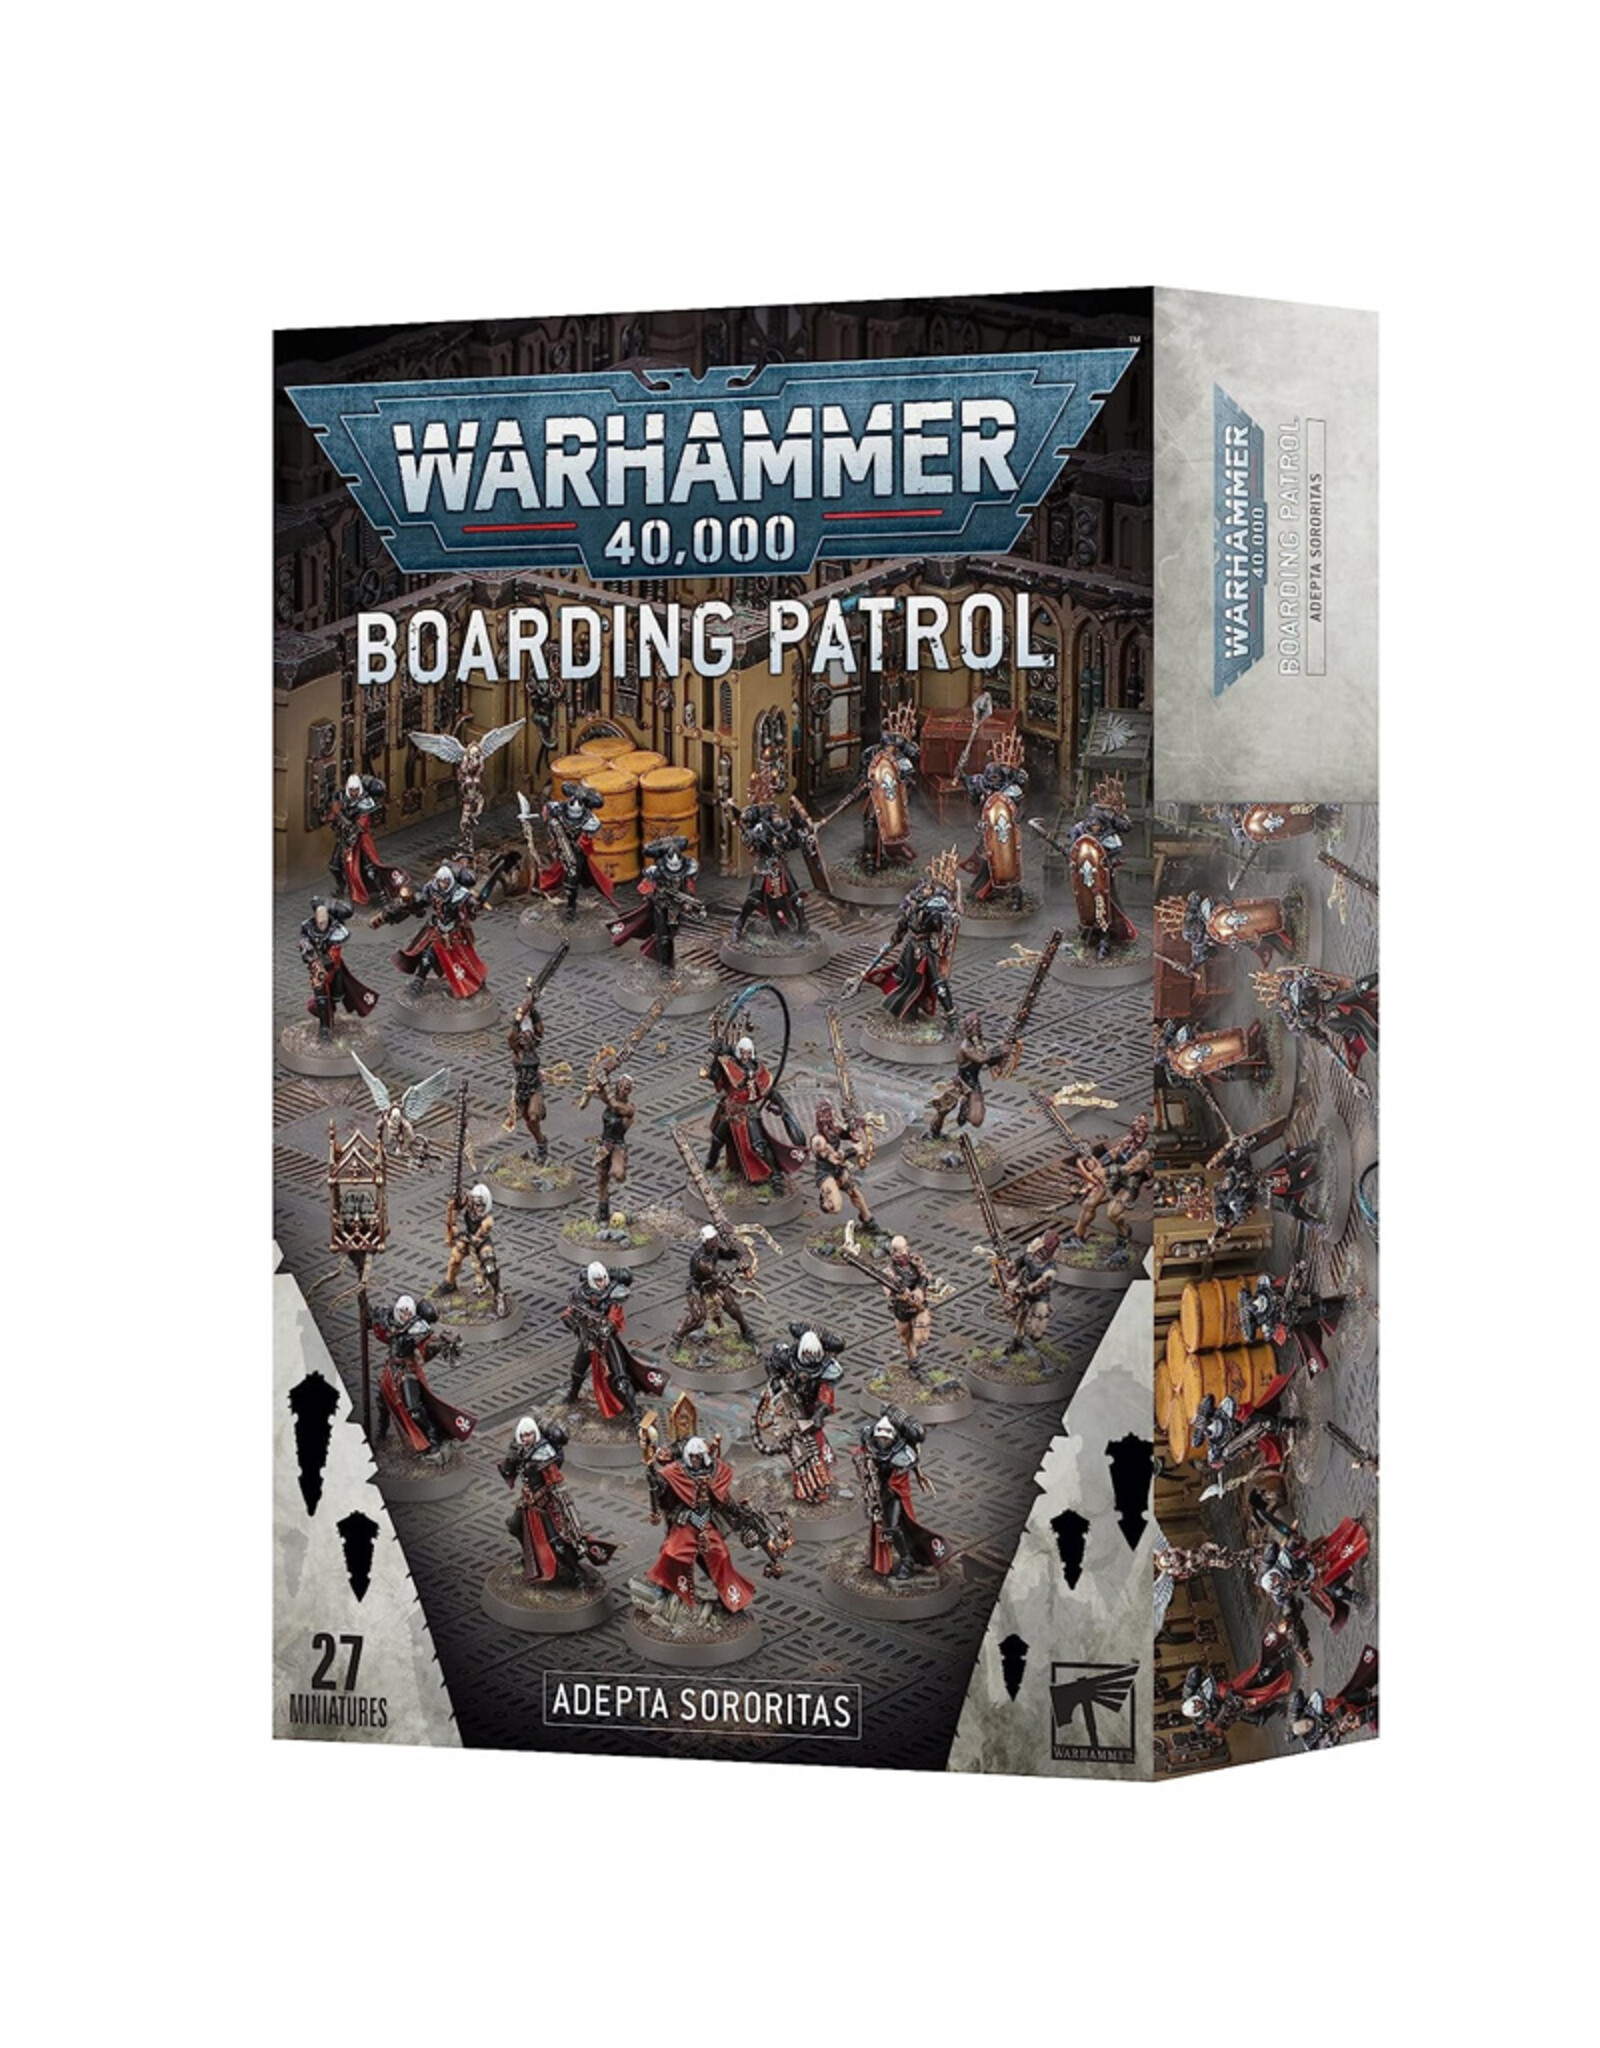 Games Workshop Warhammer 40,000 Boarding Patrol: Adepta Sororitas